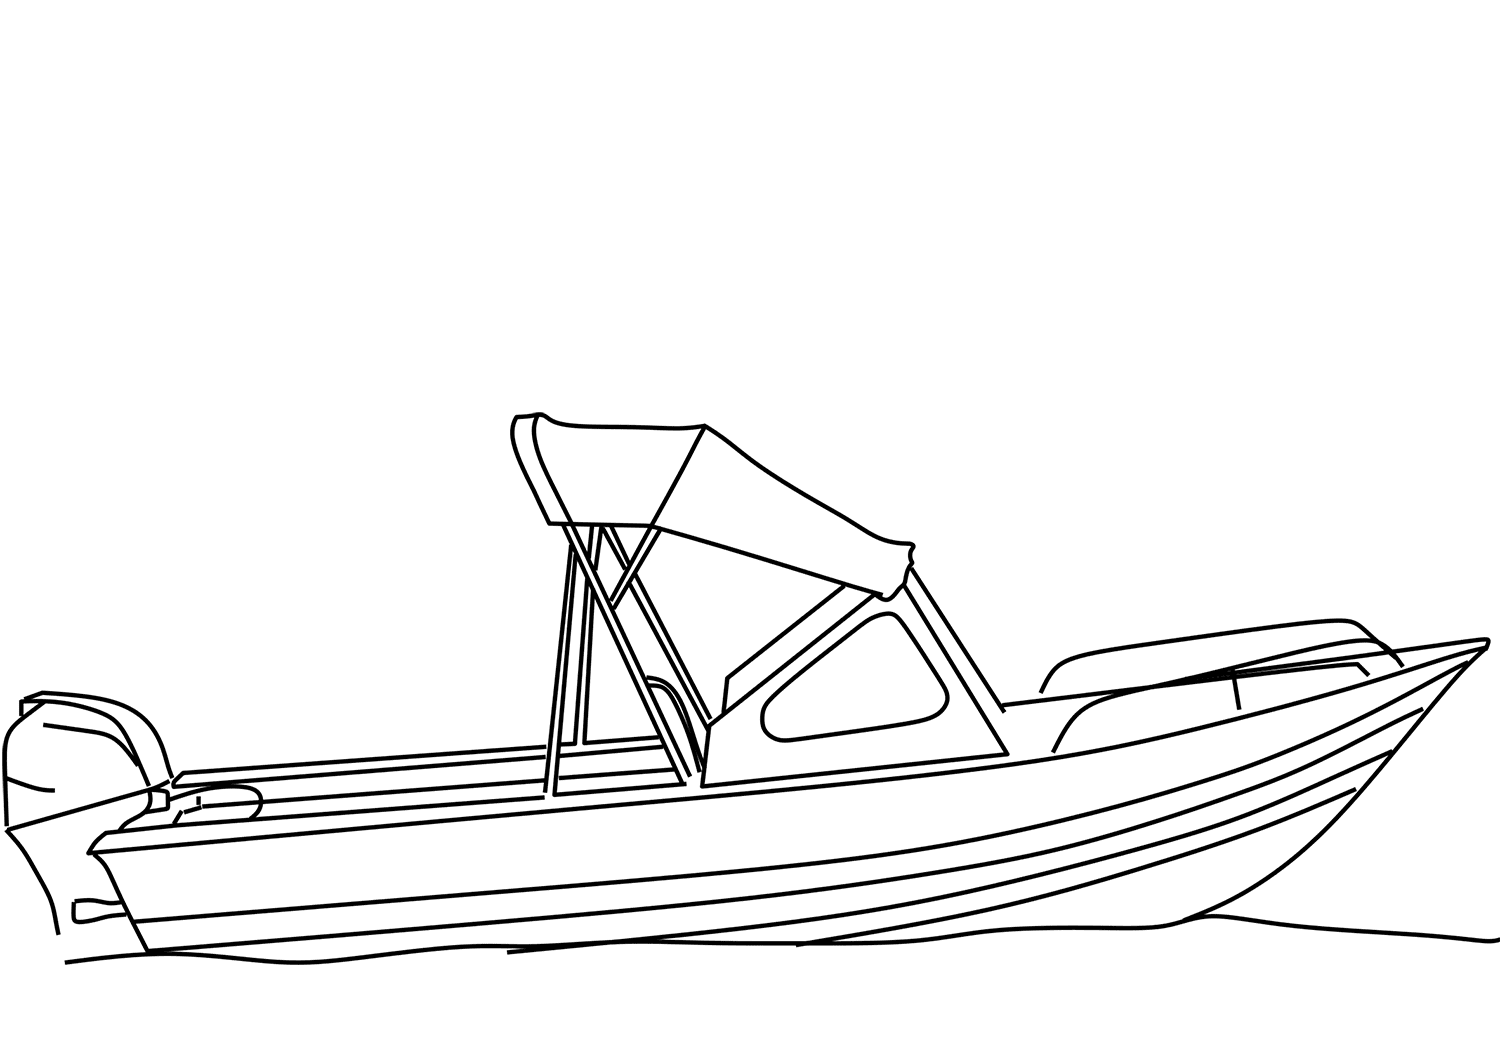 Tranh tô màu chiếc thuyền máy